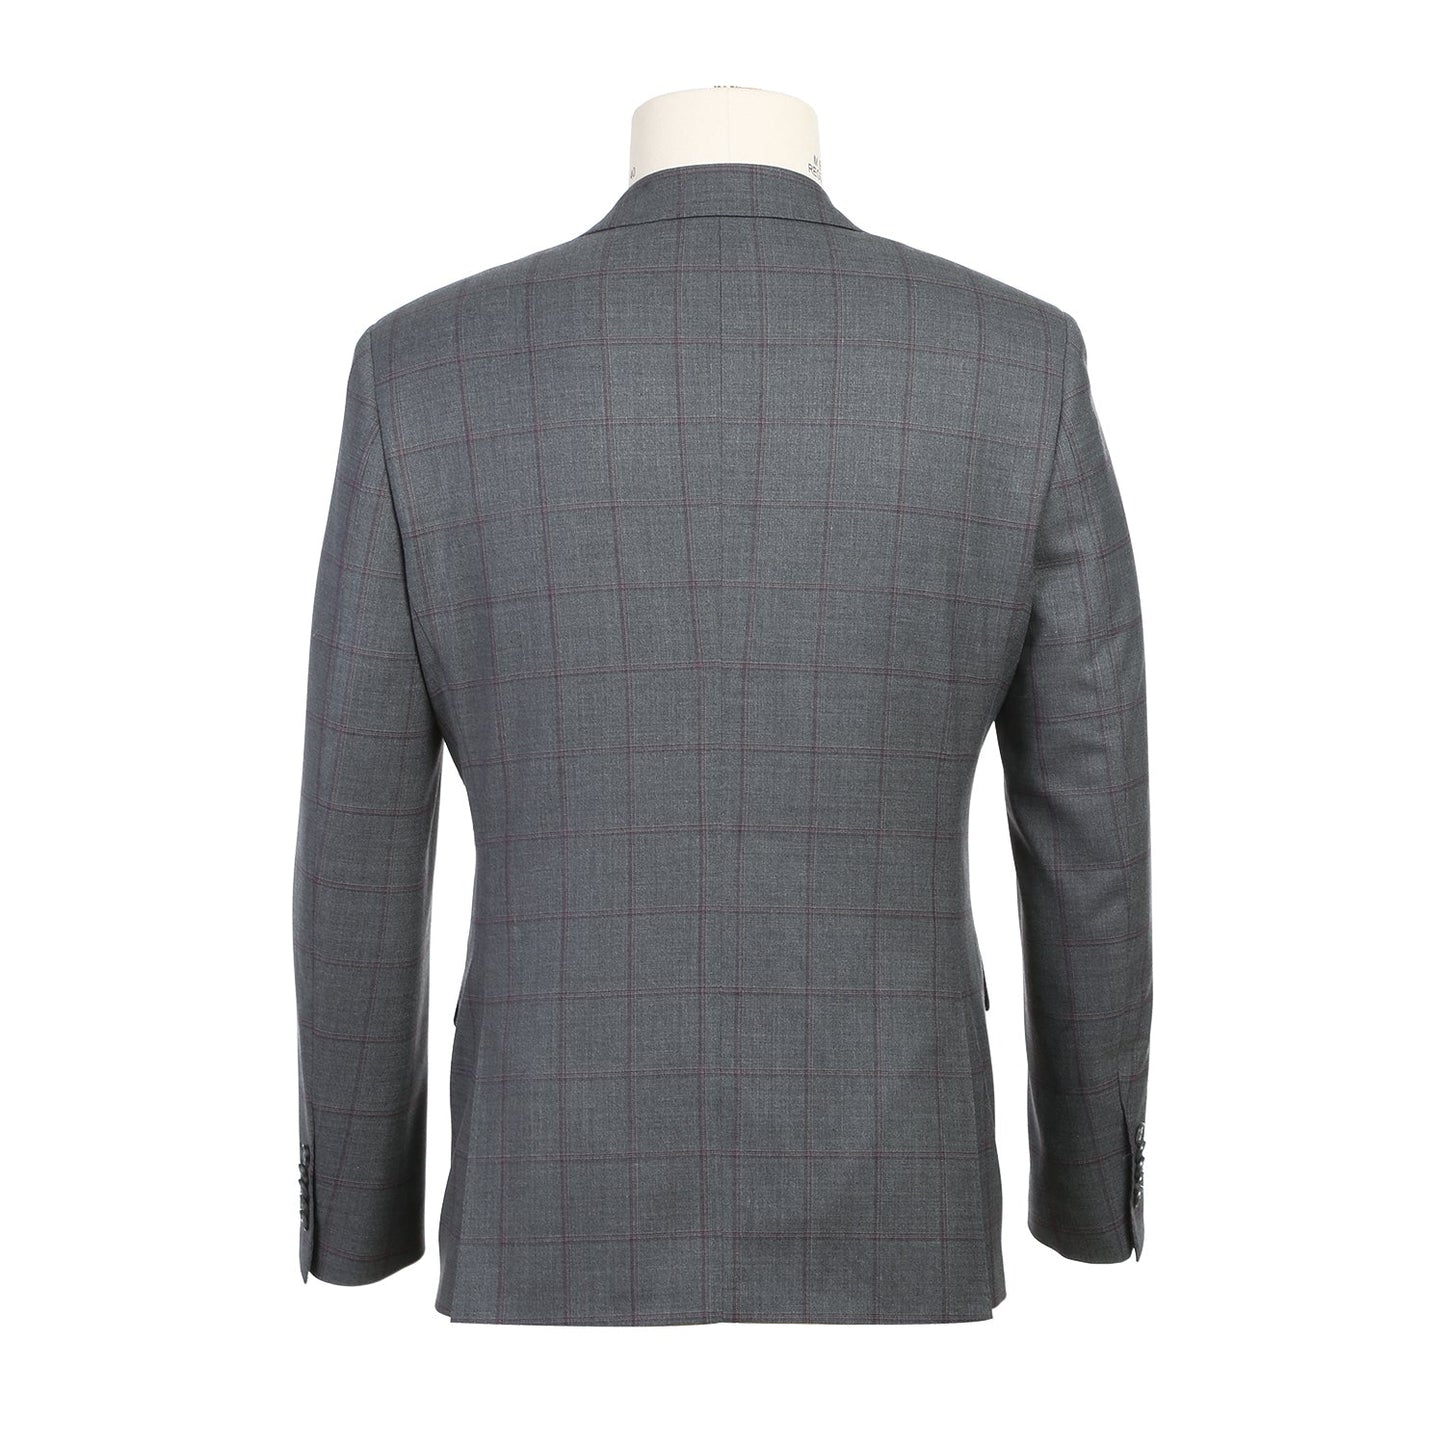 EL82-61-092 Slim Fit Gray and Burgundy Windowpane Wool Suit